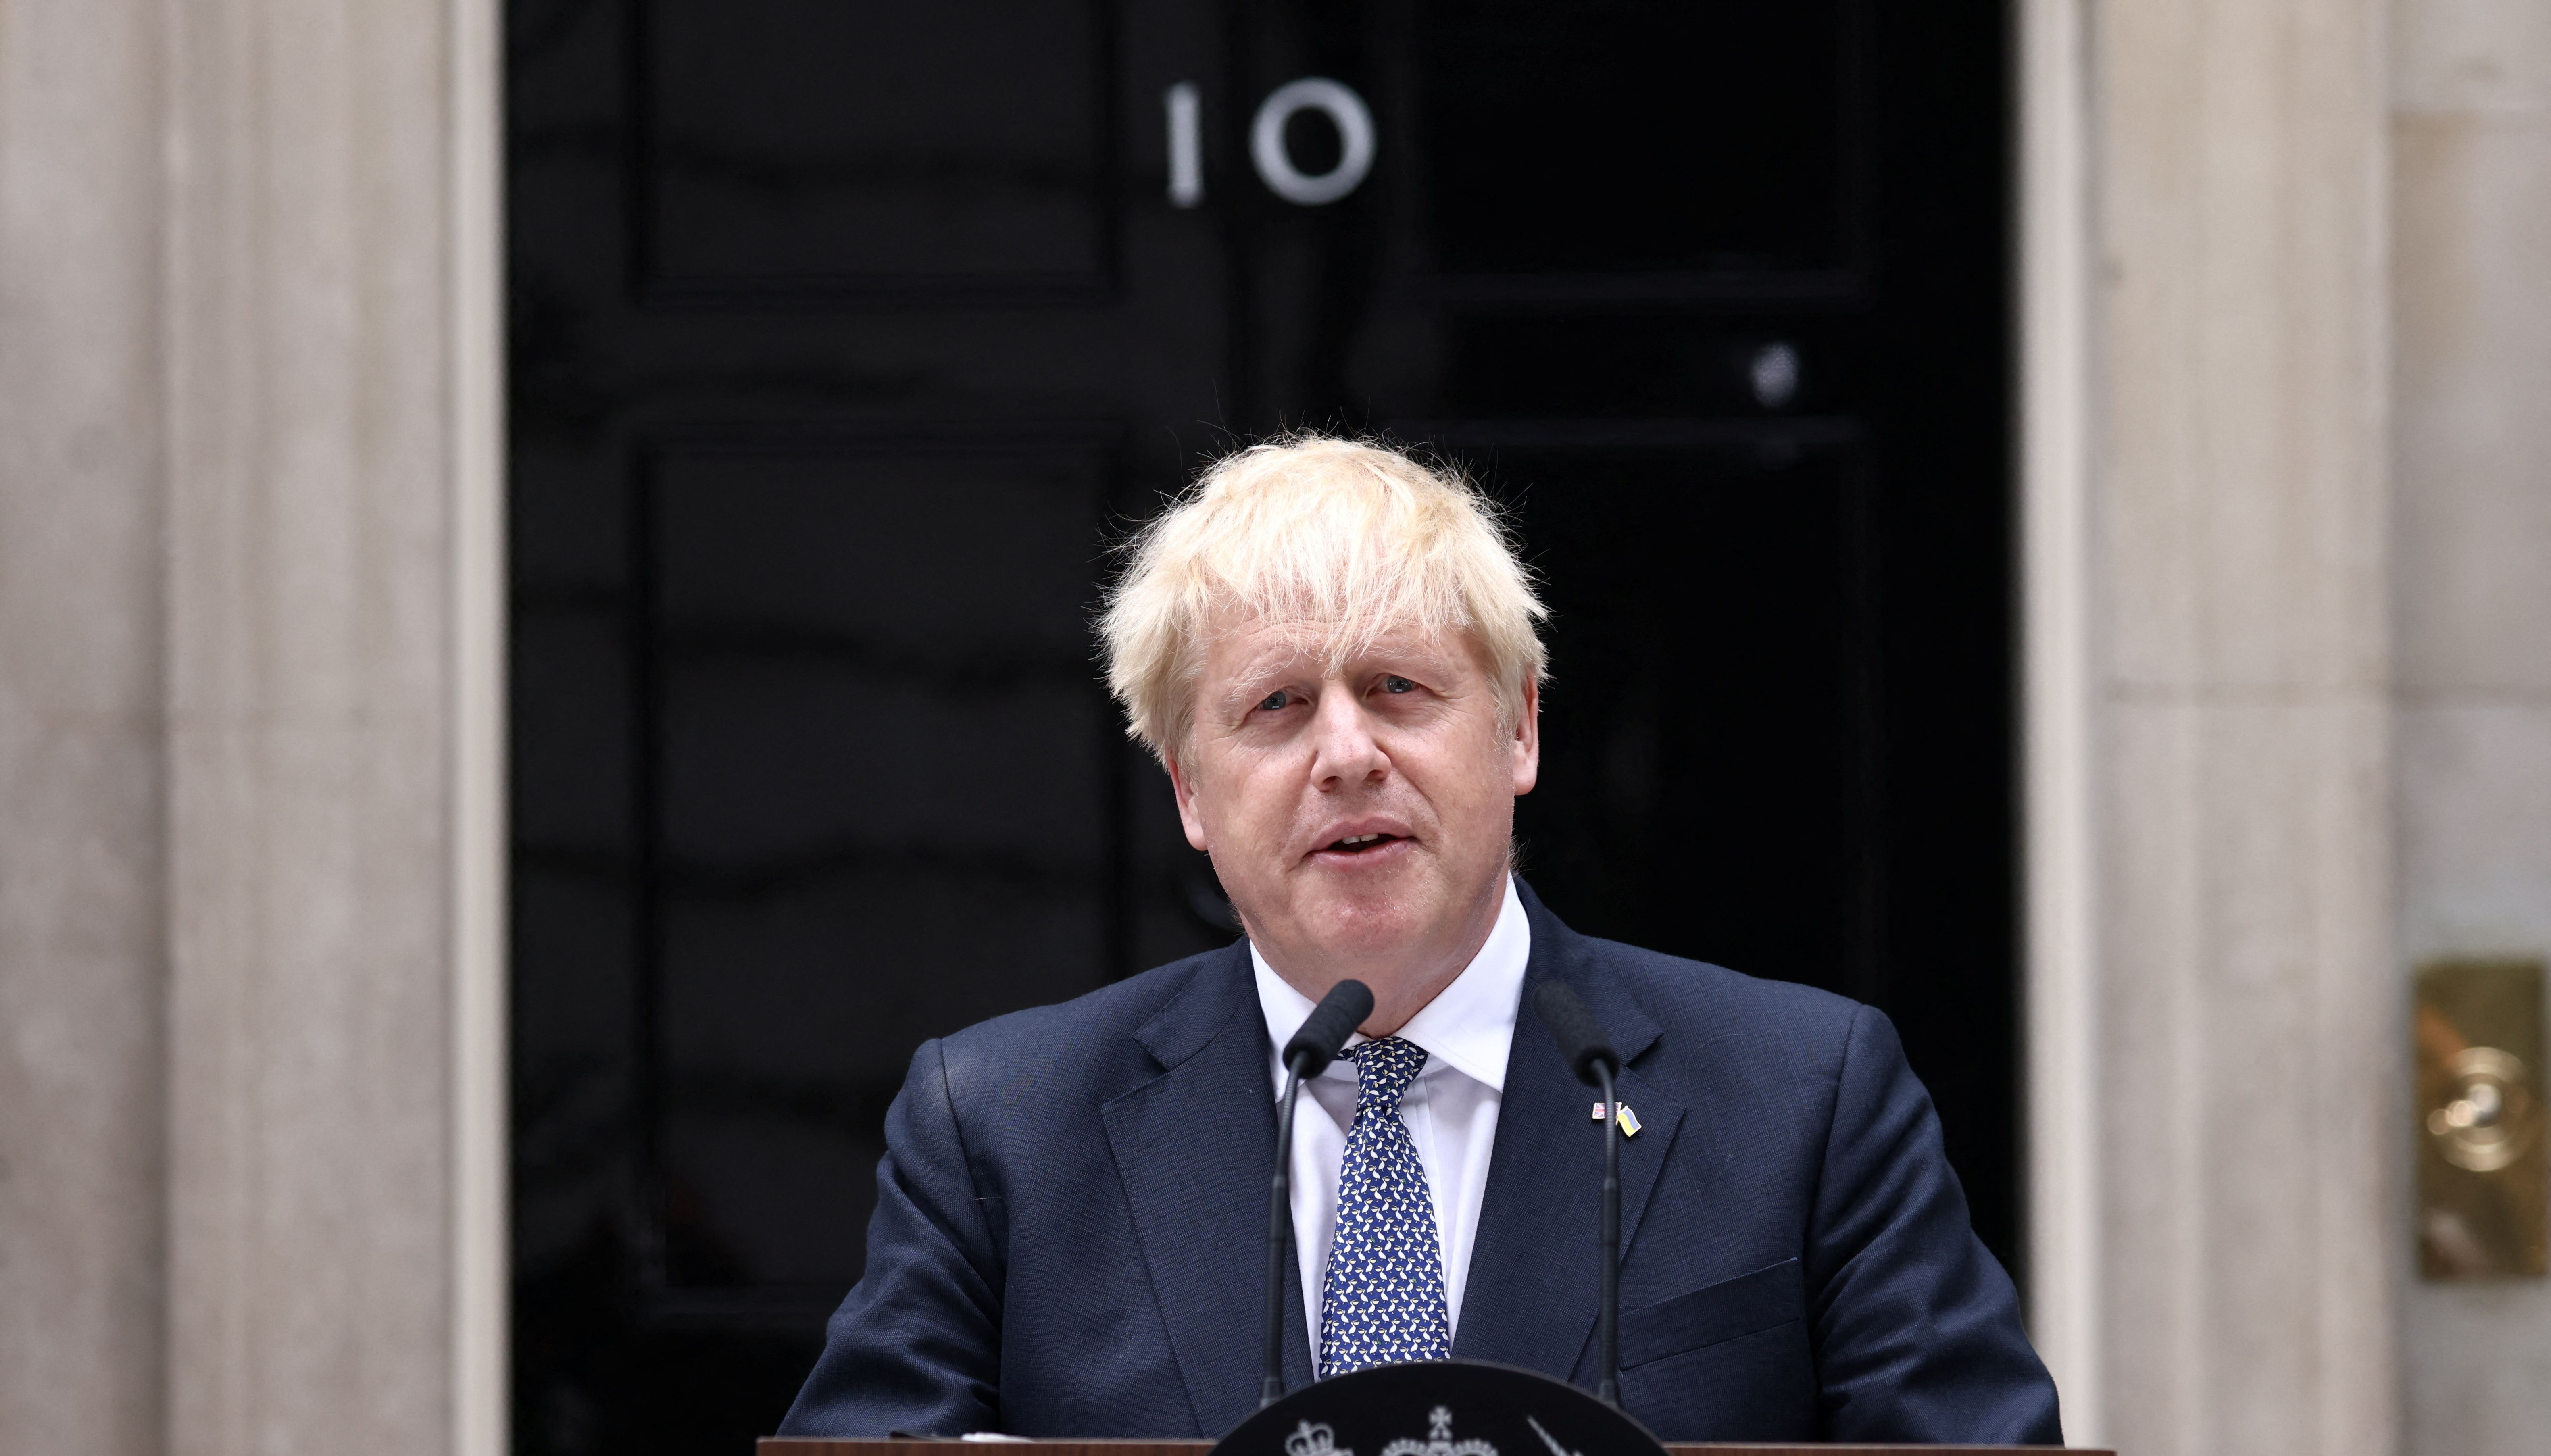 Boris Johnson announced his resignation earlier today